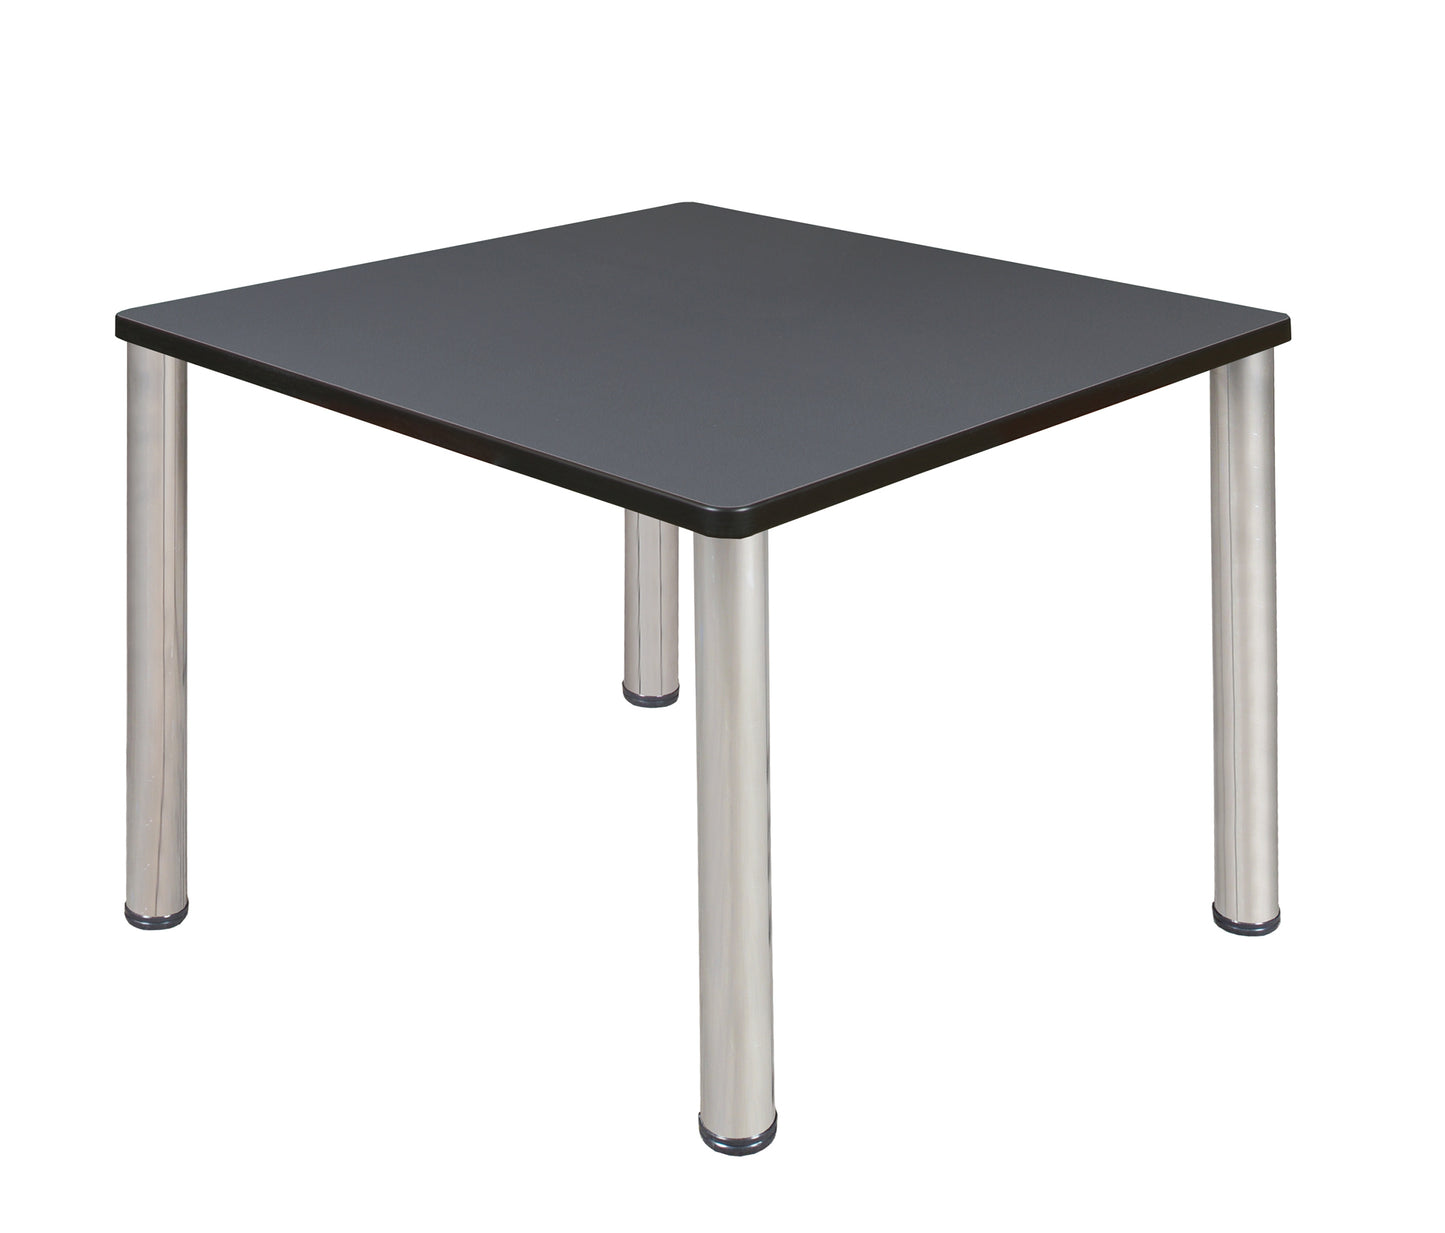 Regency Kee 36 in. Medium Square Breakroom Table- Ash Grey Top, Black Legs